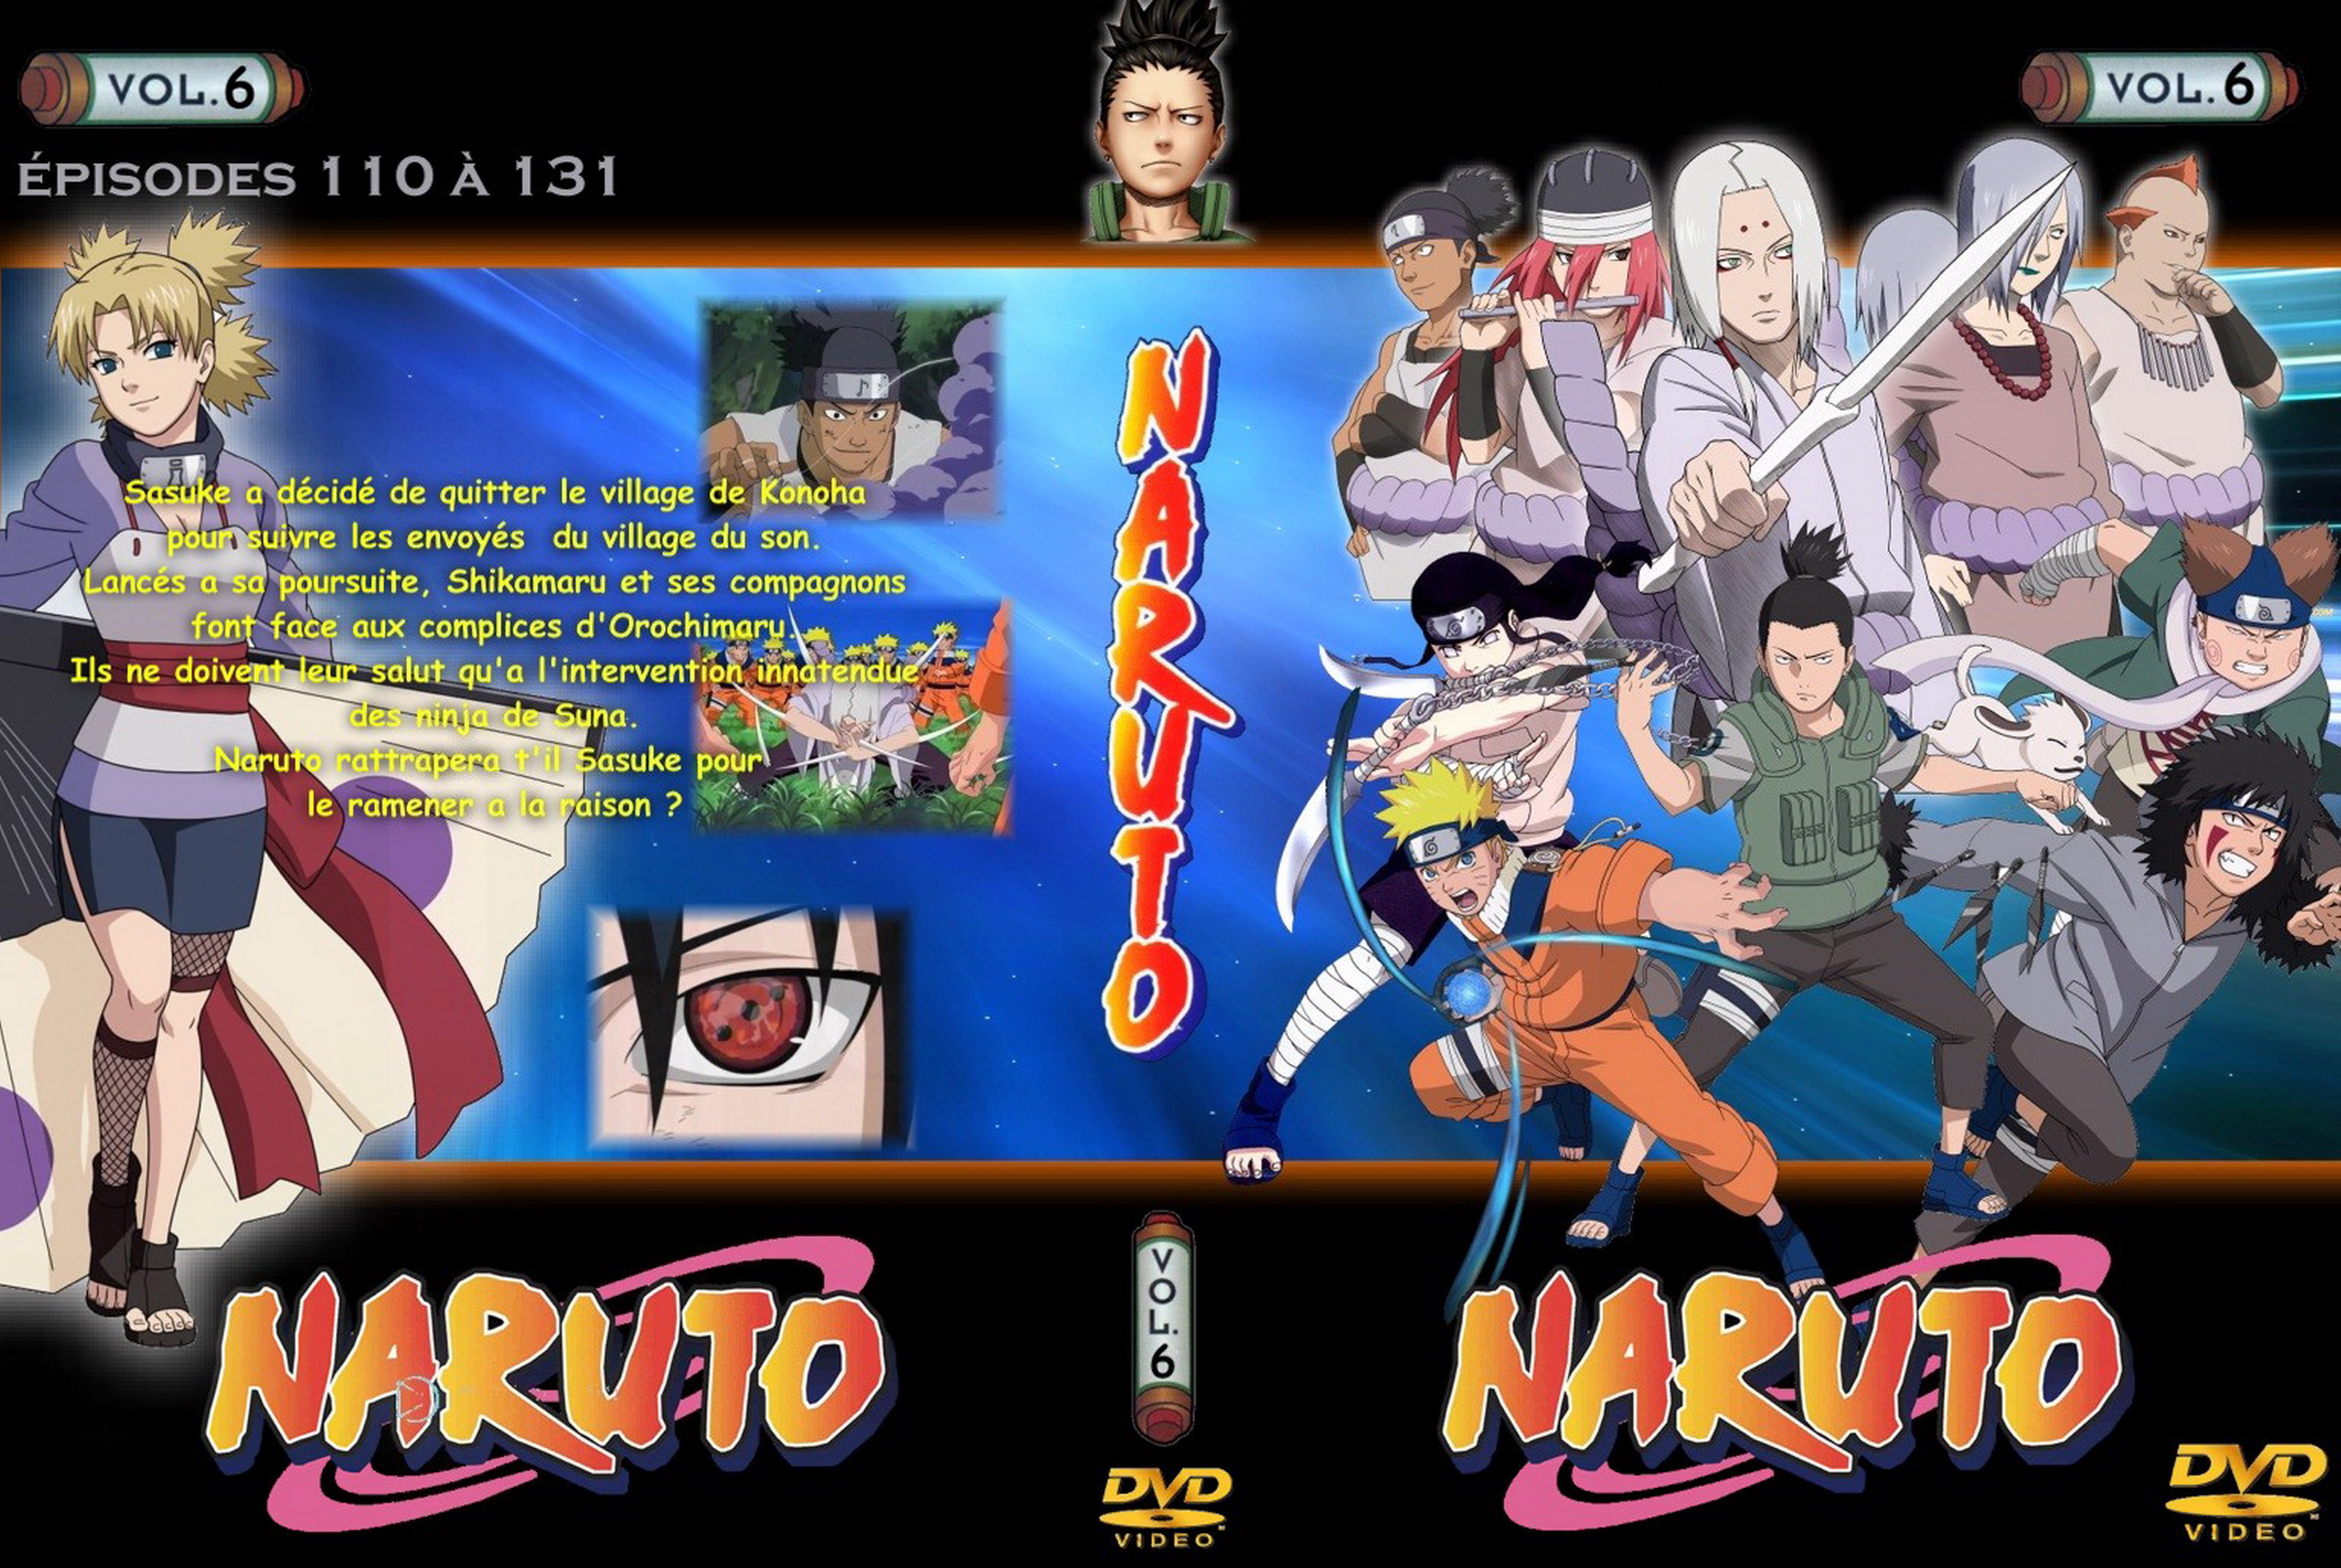 Jaquette DVD Naruto vol 06 v2